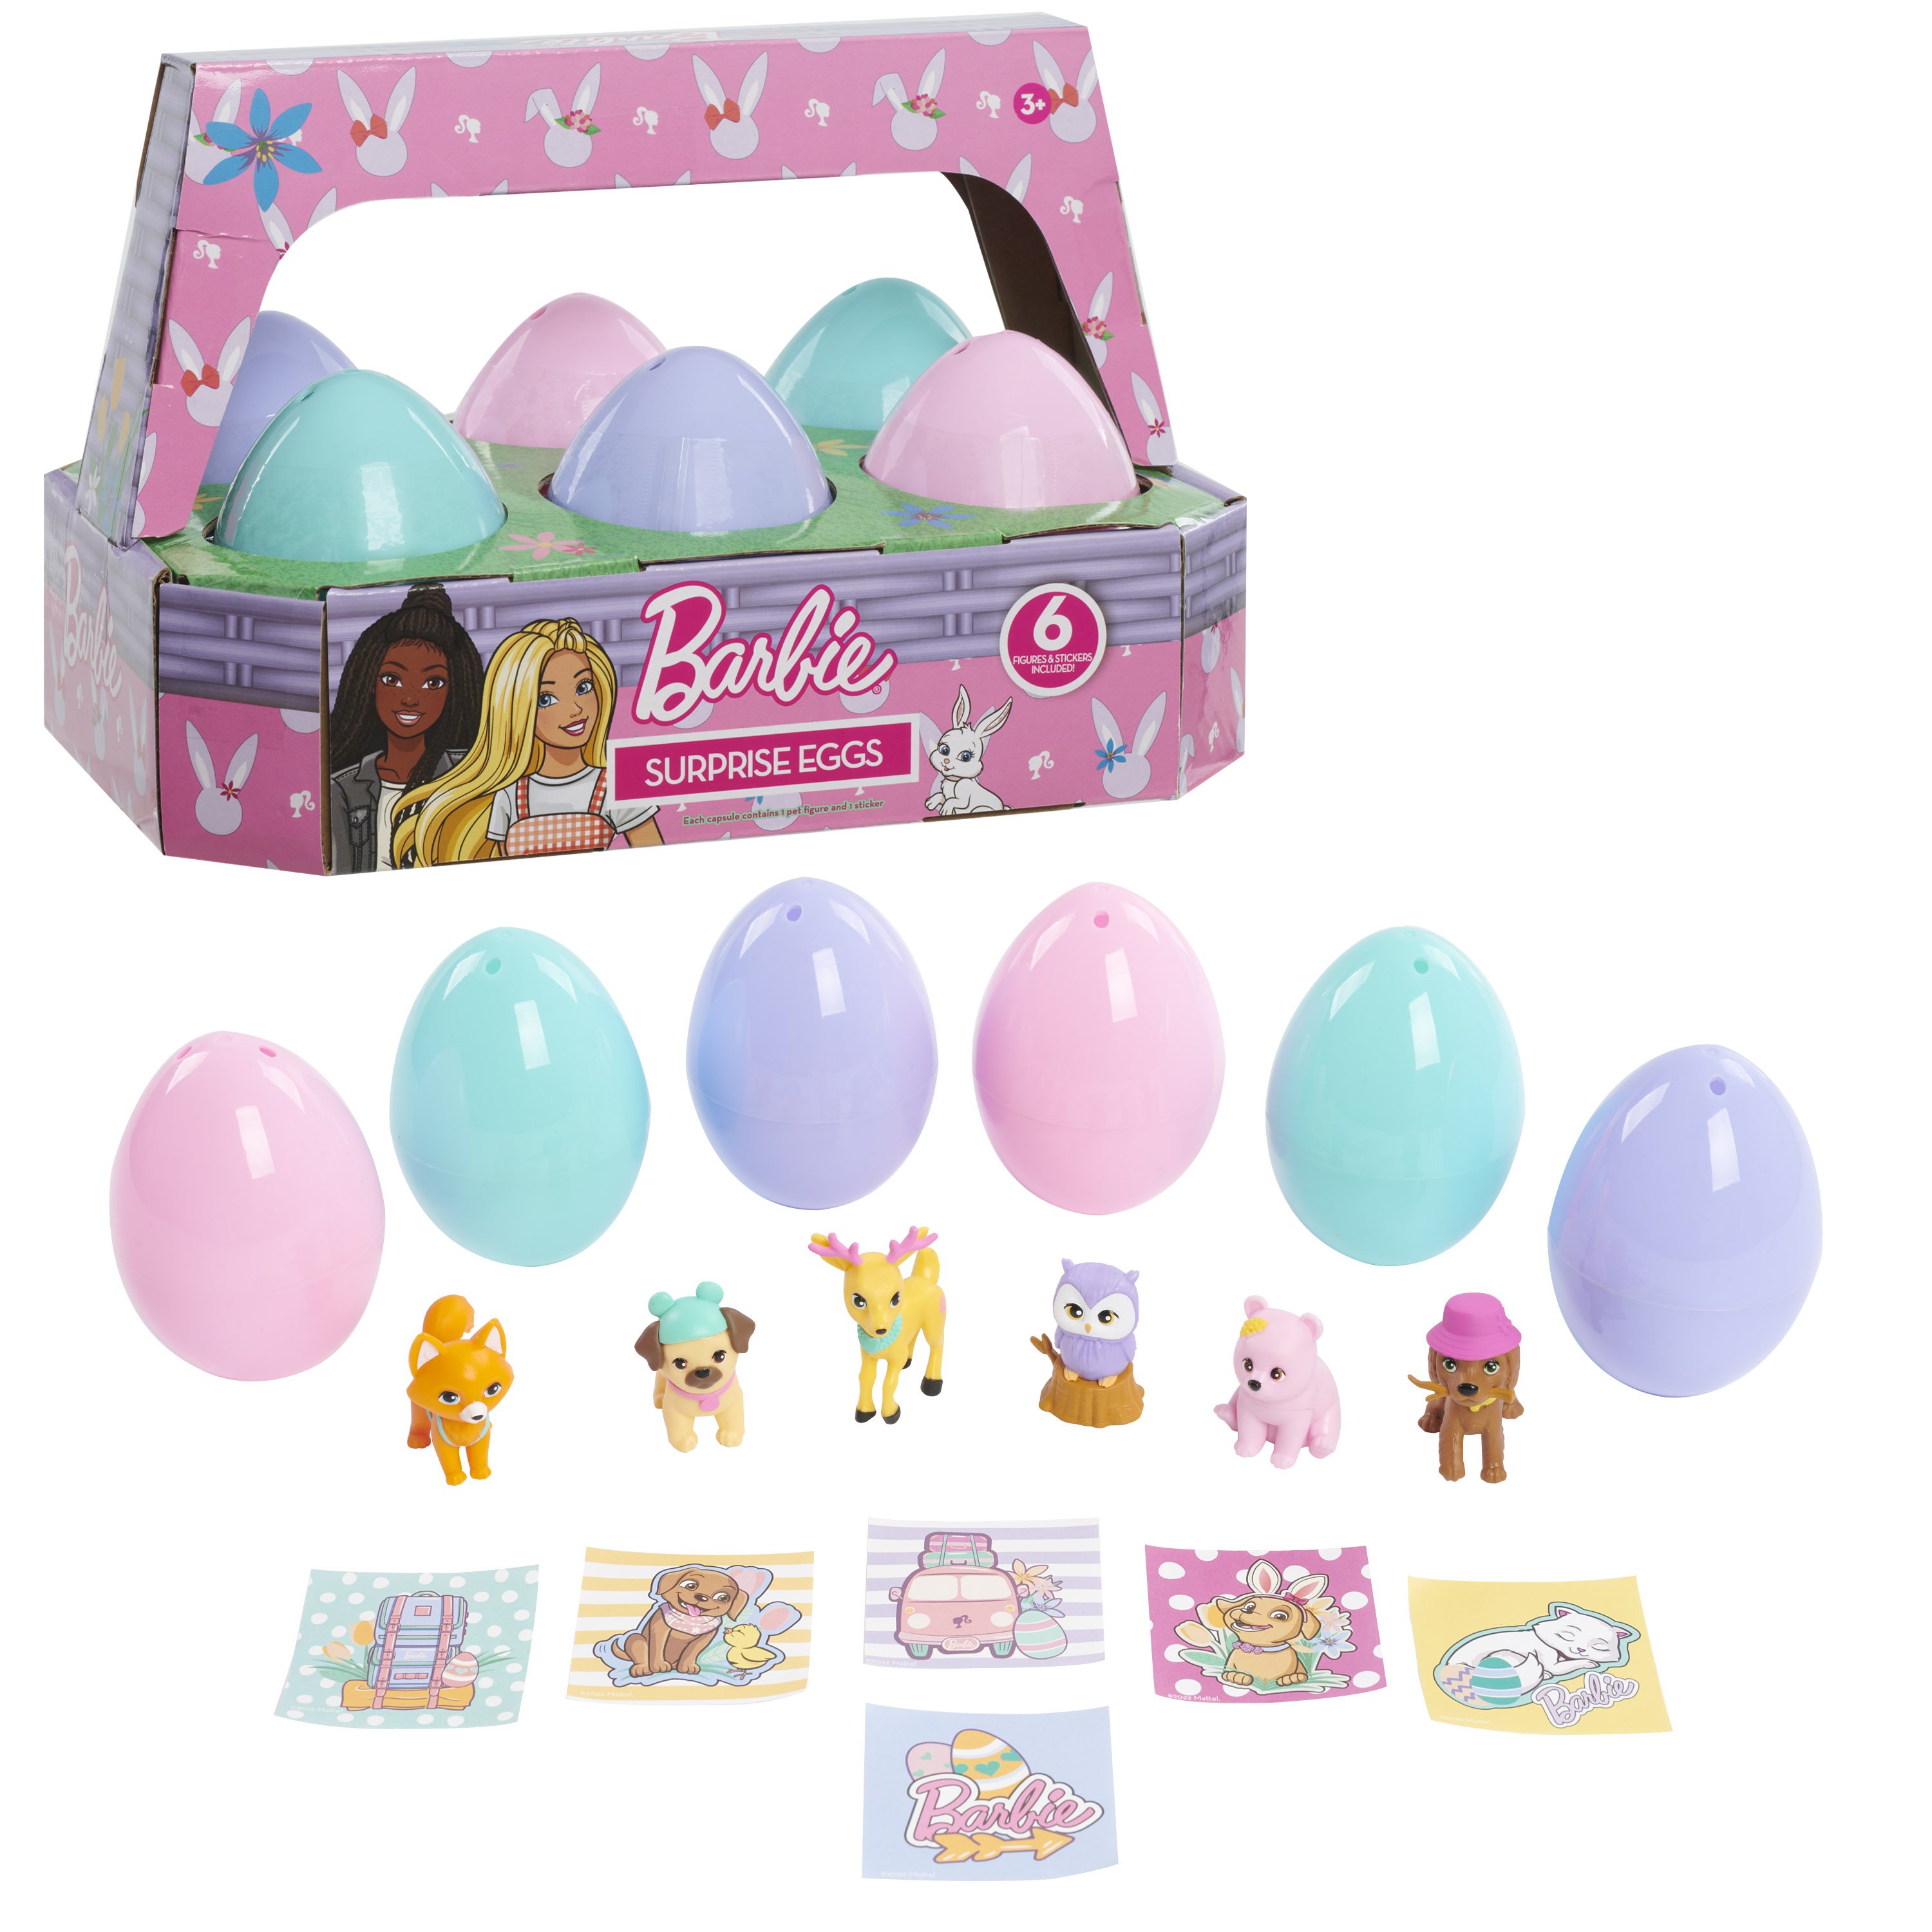 Barbie Surprise Easter Eggs - Shop Action Figures & Dolls at H-E-B